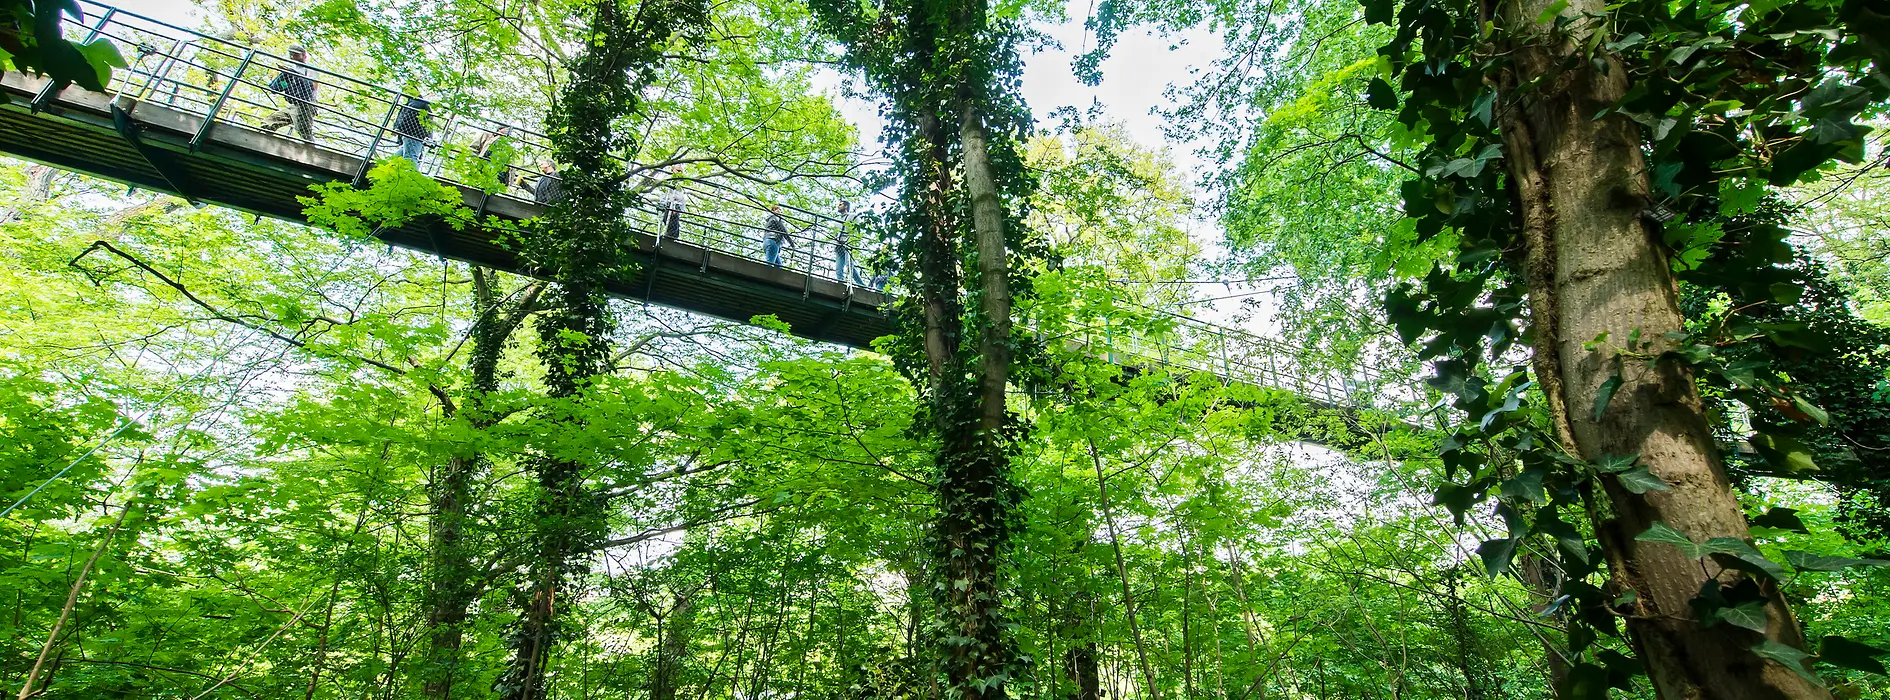 Hängebrücke und Bäume des Naturerlebnispfads im Tiergarten Schönbrunn 